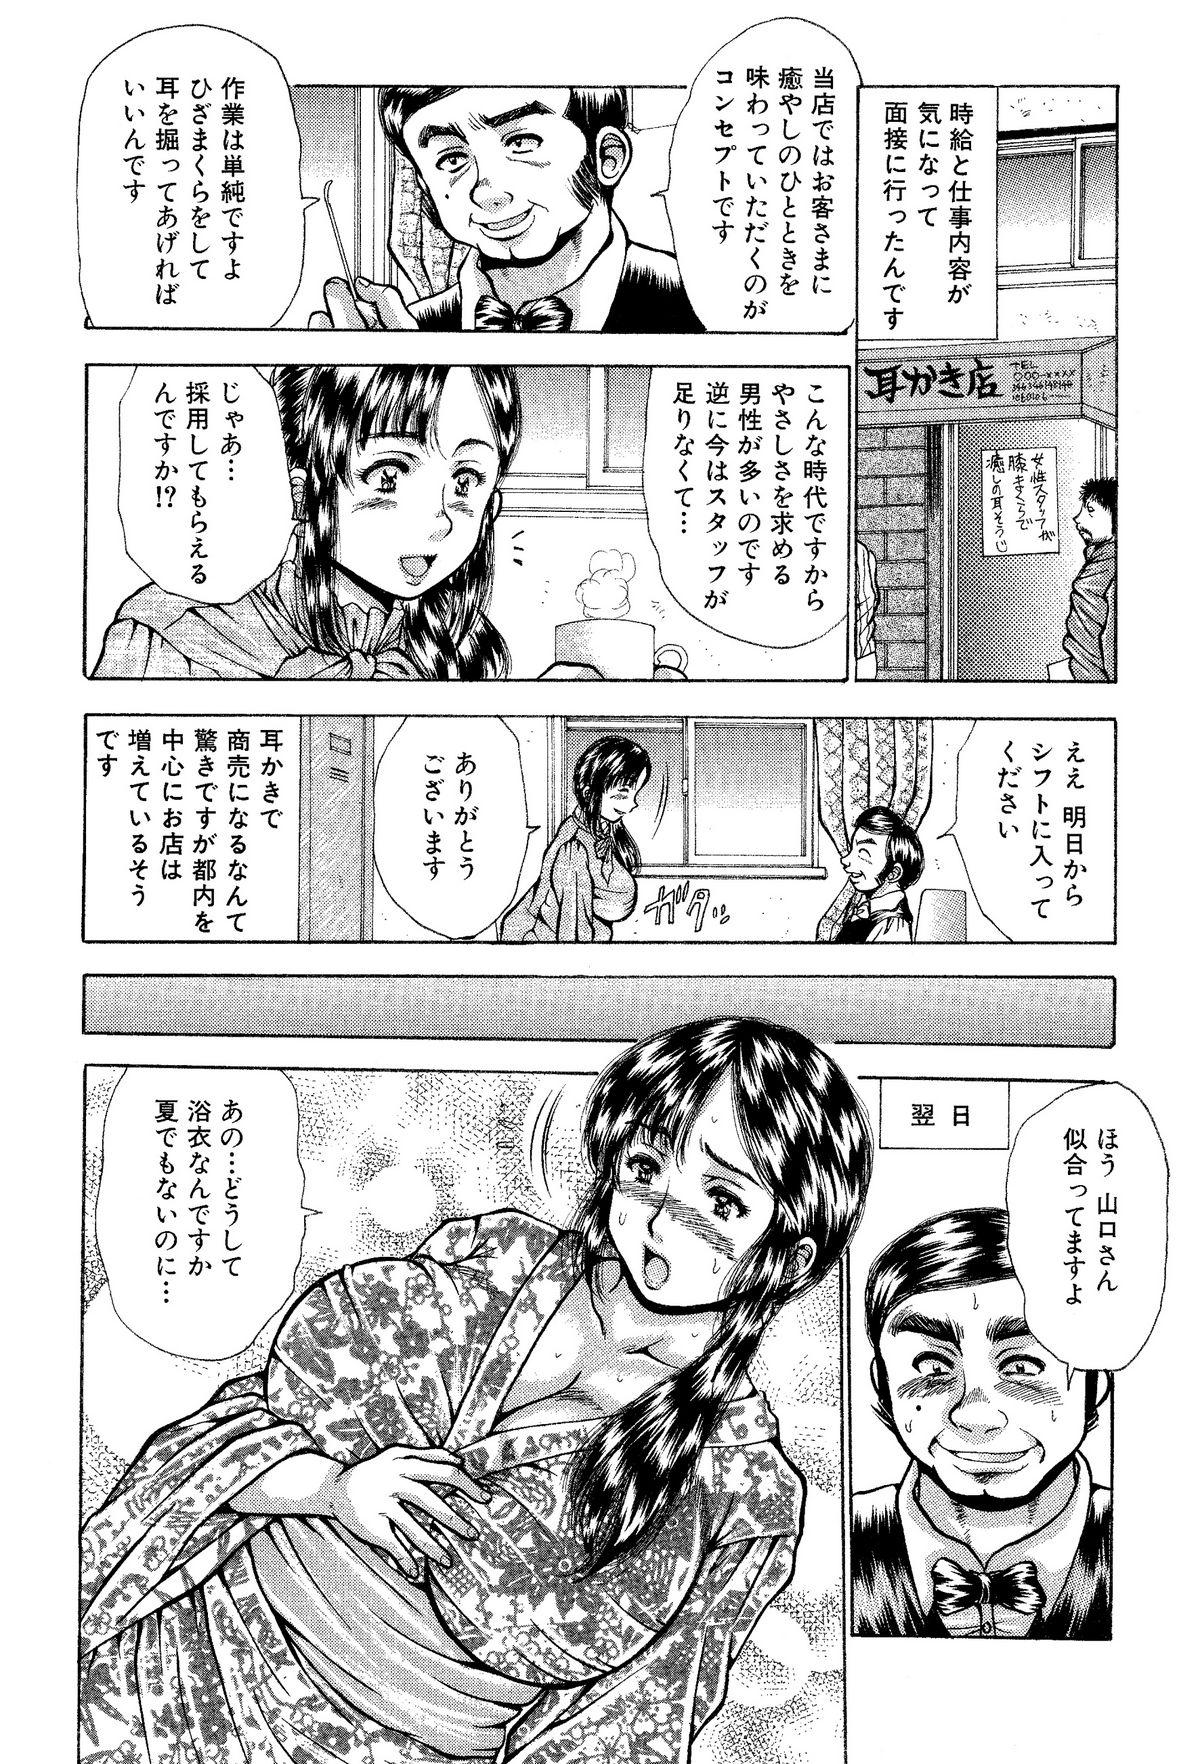 Itai Oku-san Manga o Atsumetemita 4